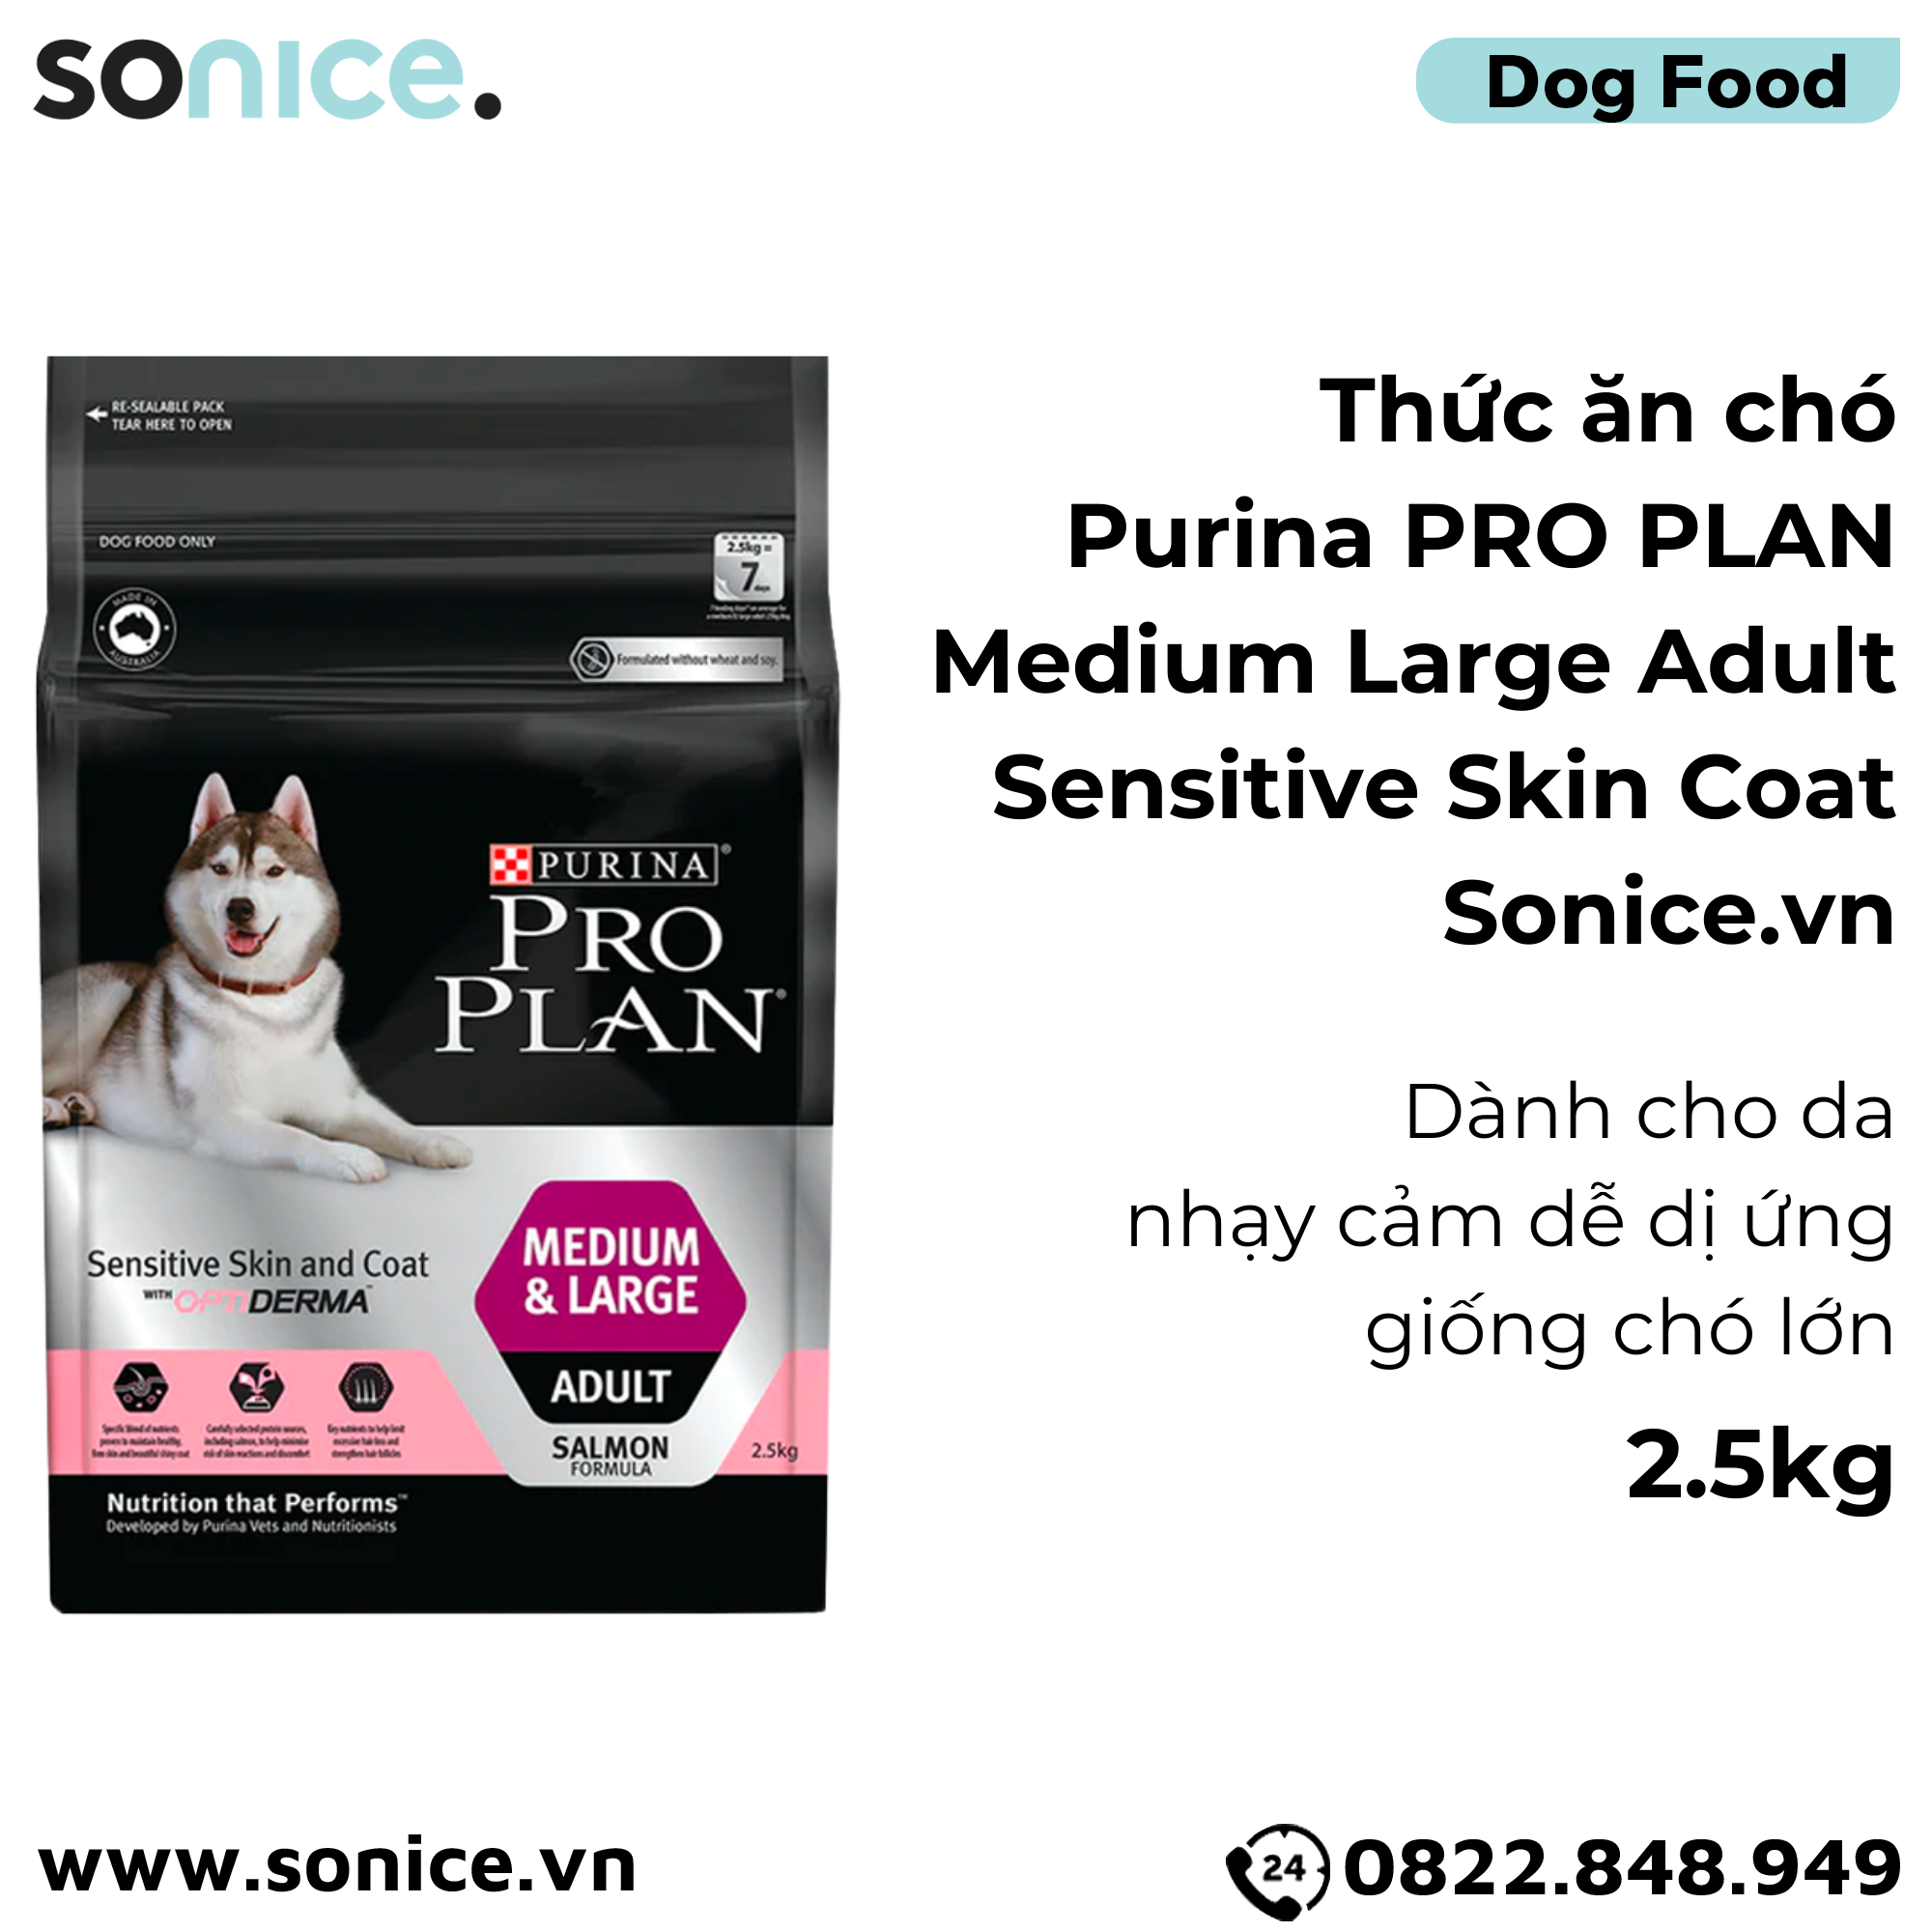  Thức ăn chó Purina PRO PLAN Medium Large Adult Sensitive Skin Coat 2.5kg - Dành cho da nhạy cảm dễ dị ứng giống chó lớn SONICE. 